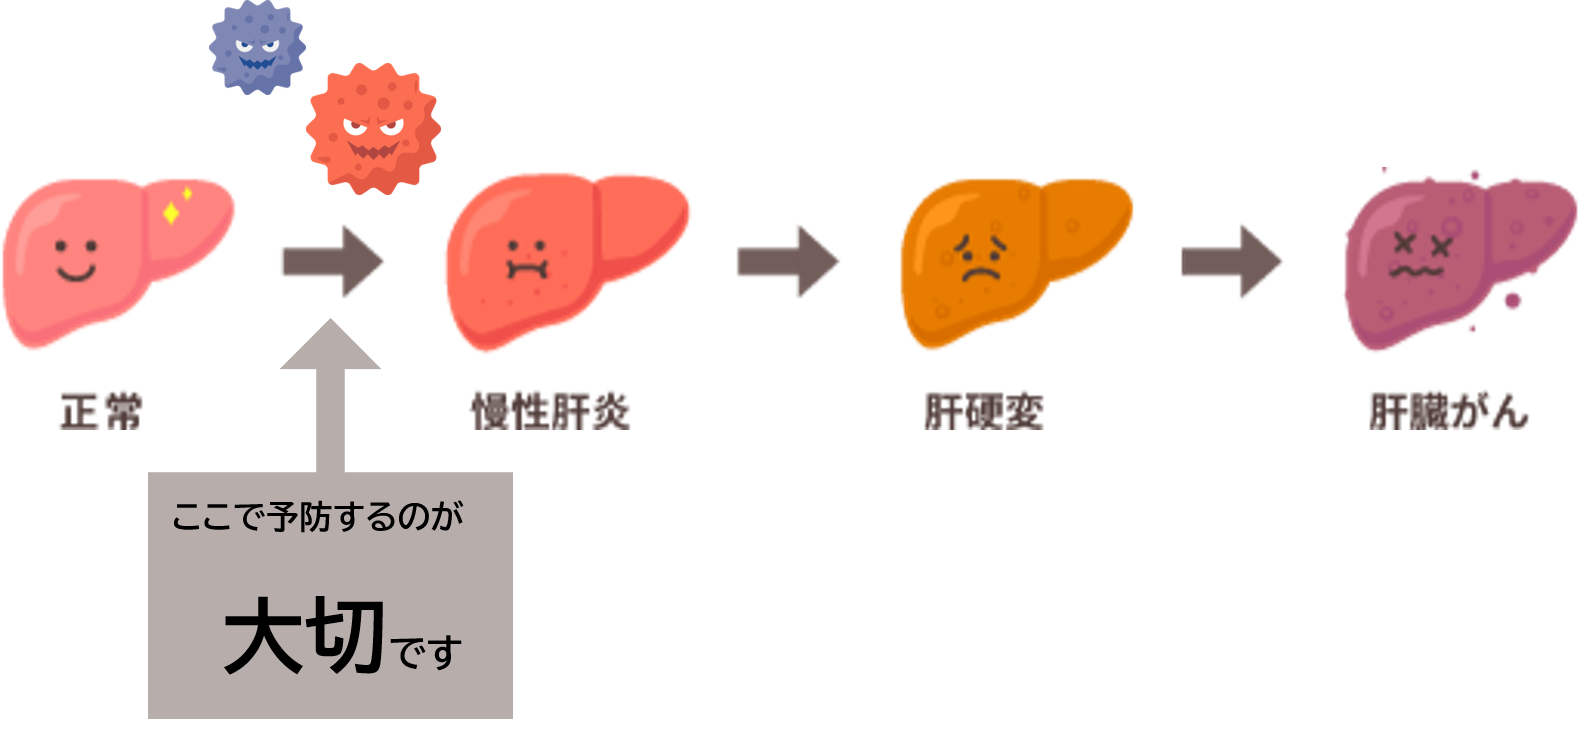 肝臓が正常な状態から、慢性肝炎になり、肝硬変になり、最終的に肝臓がんになる様子を表したイラストです。